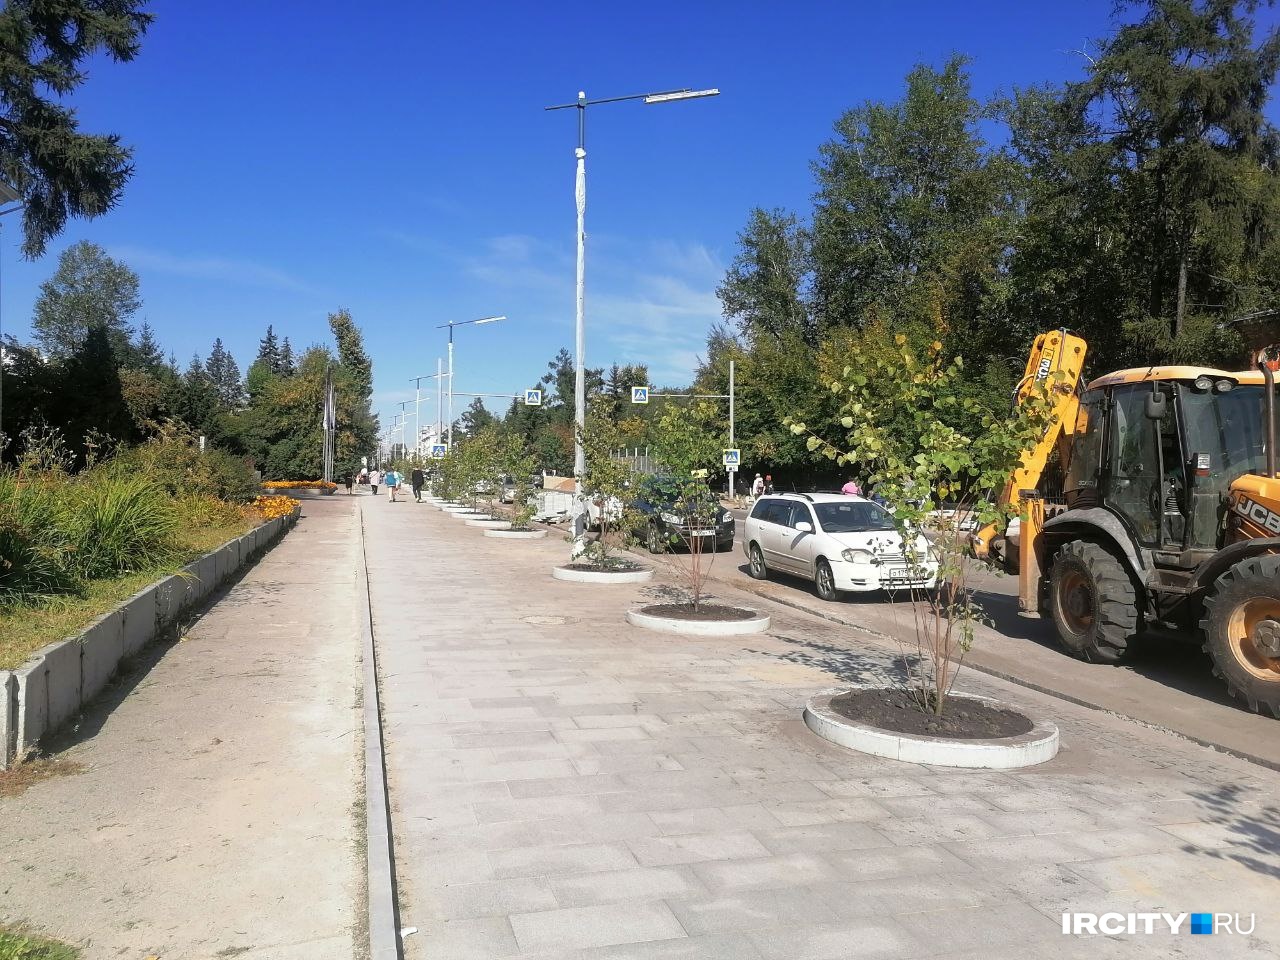 На ул. Карла Маркса в Иркутске начали высаживать 2-метровые саженцы, хотя мэр обещал 5-метровые деревья